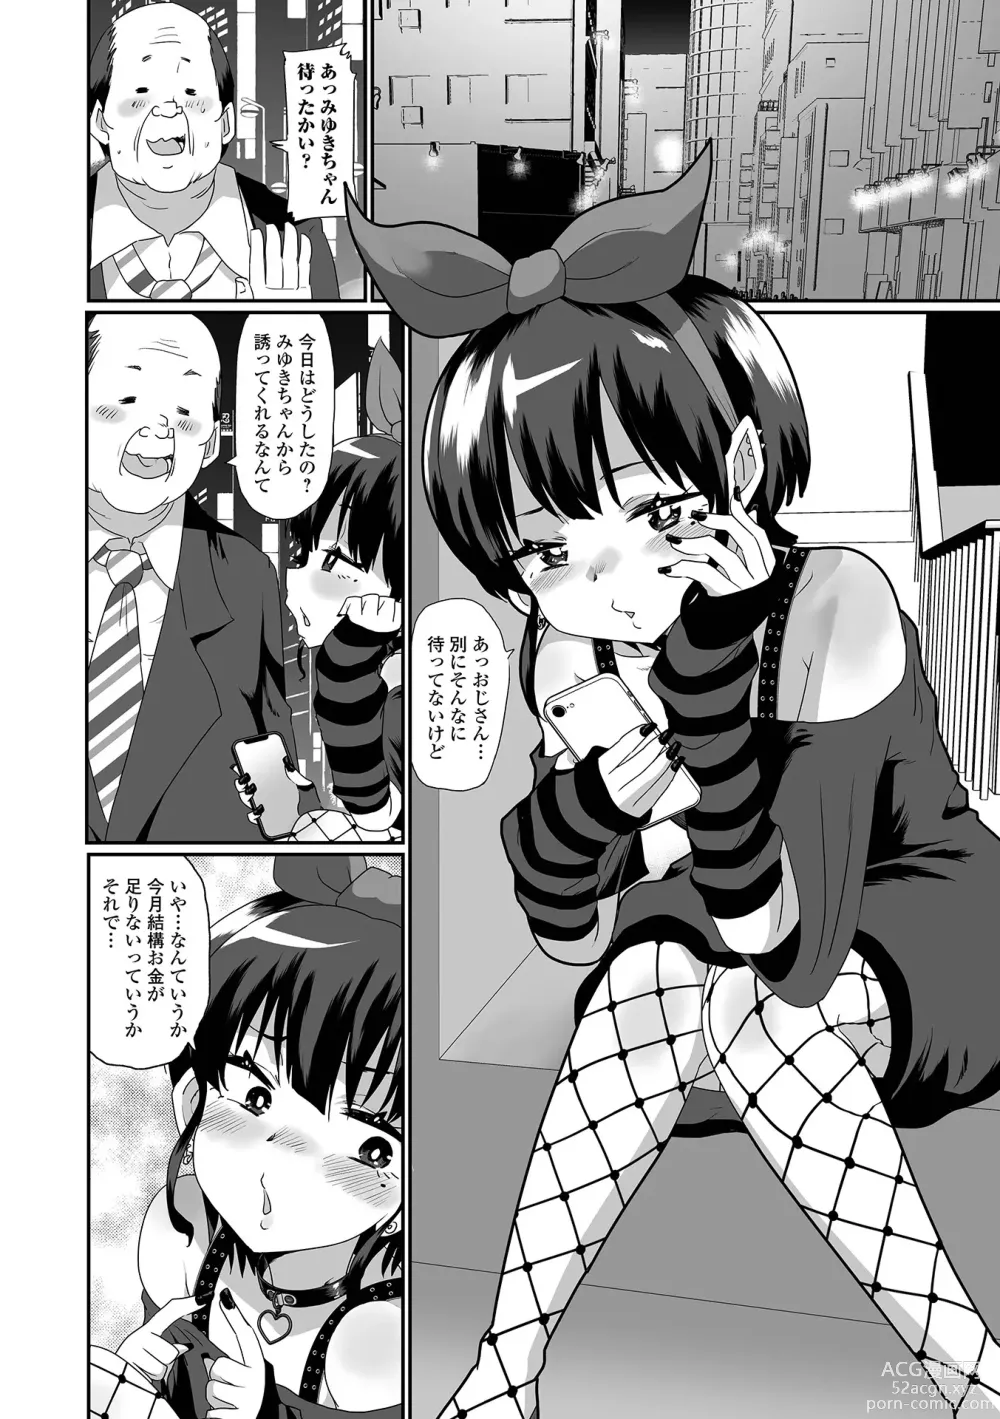 Page 8 of manga Gekkan Web Otoko no Ko-llection! S Vol. 92